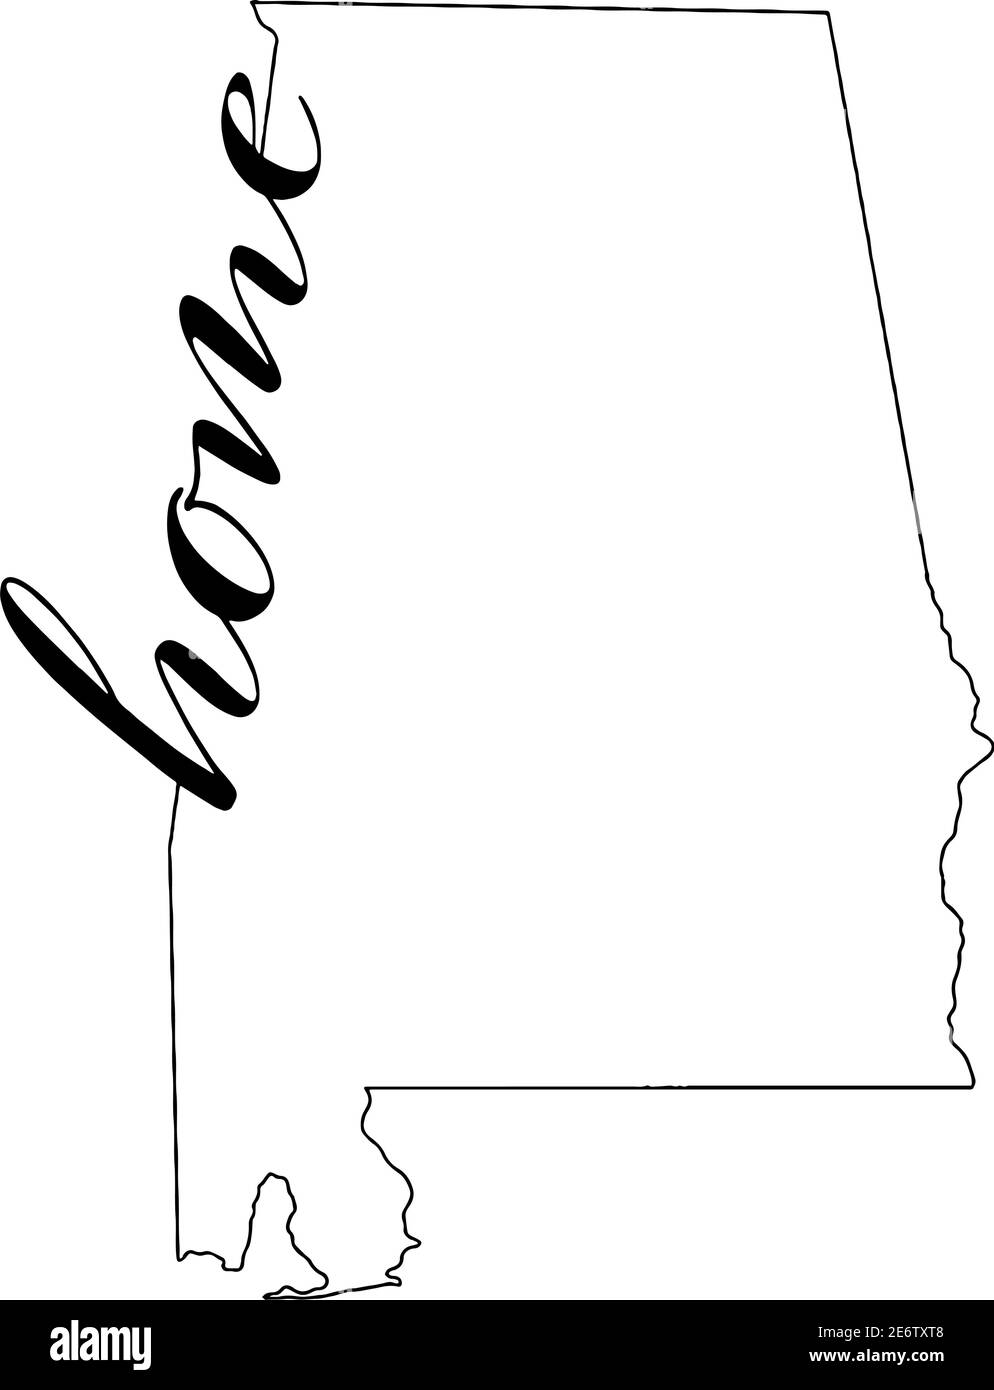 Plan de l'état de l'Alabama avec le mot home écrit dans le contour de la carte Illustration de Vecteur